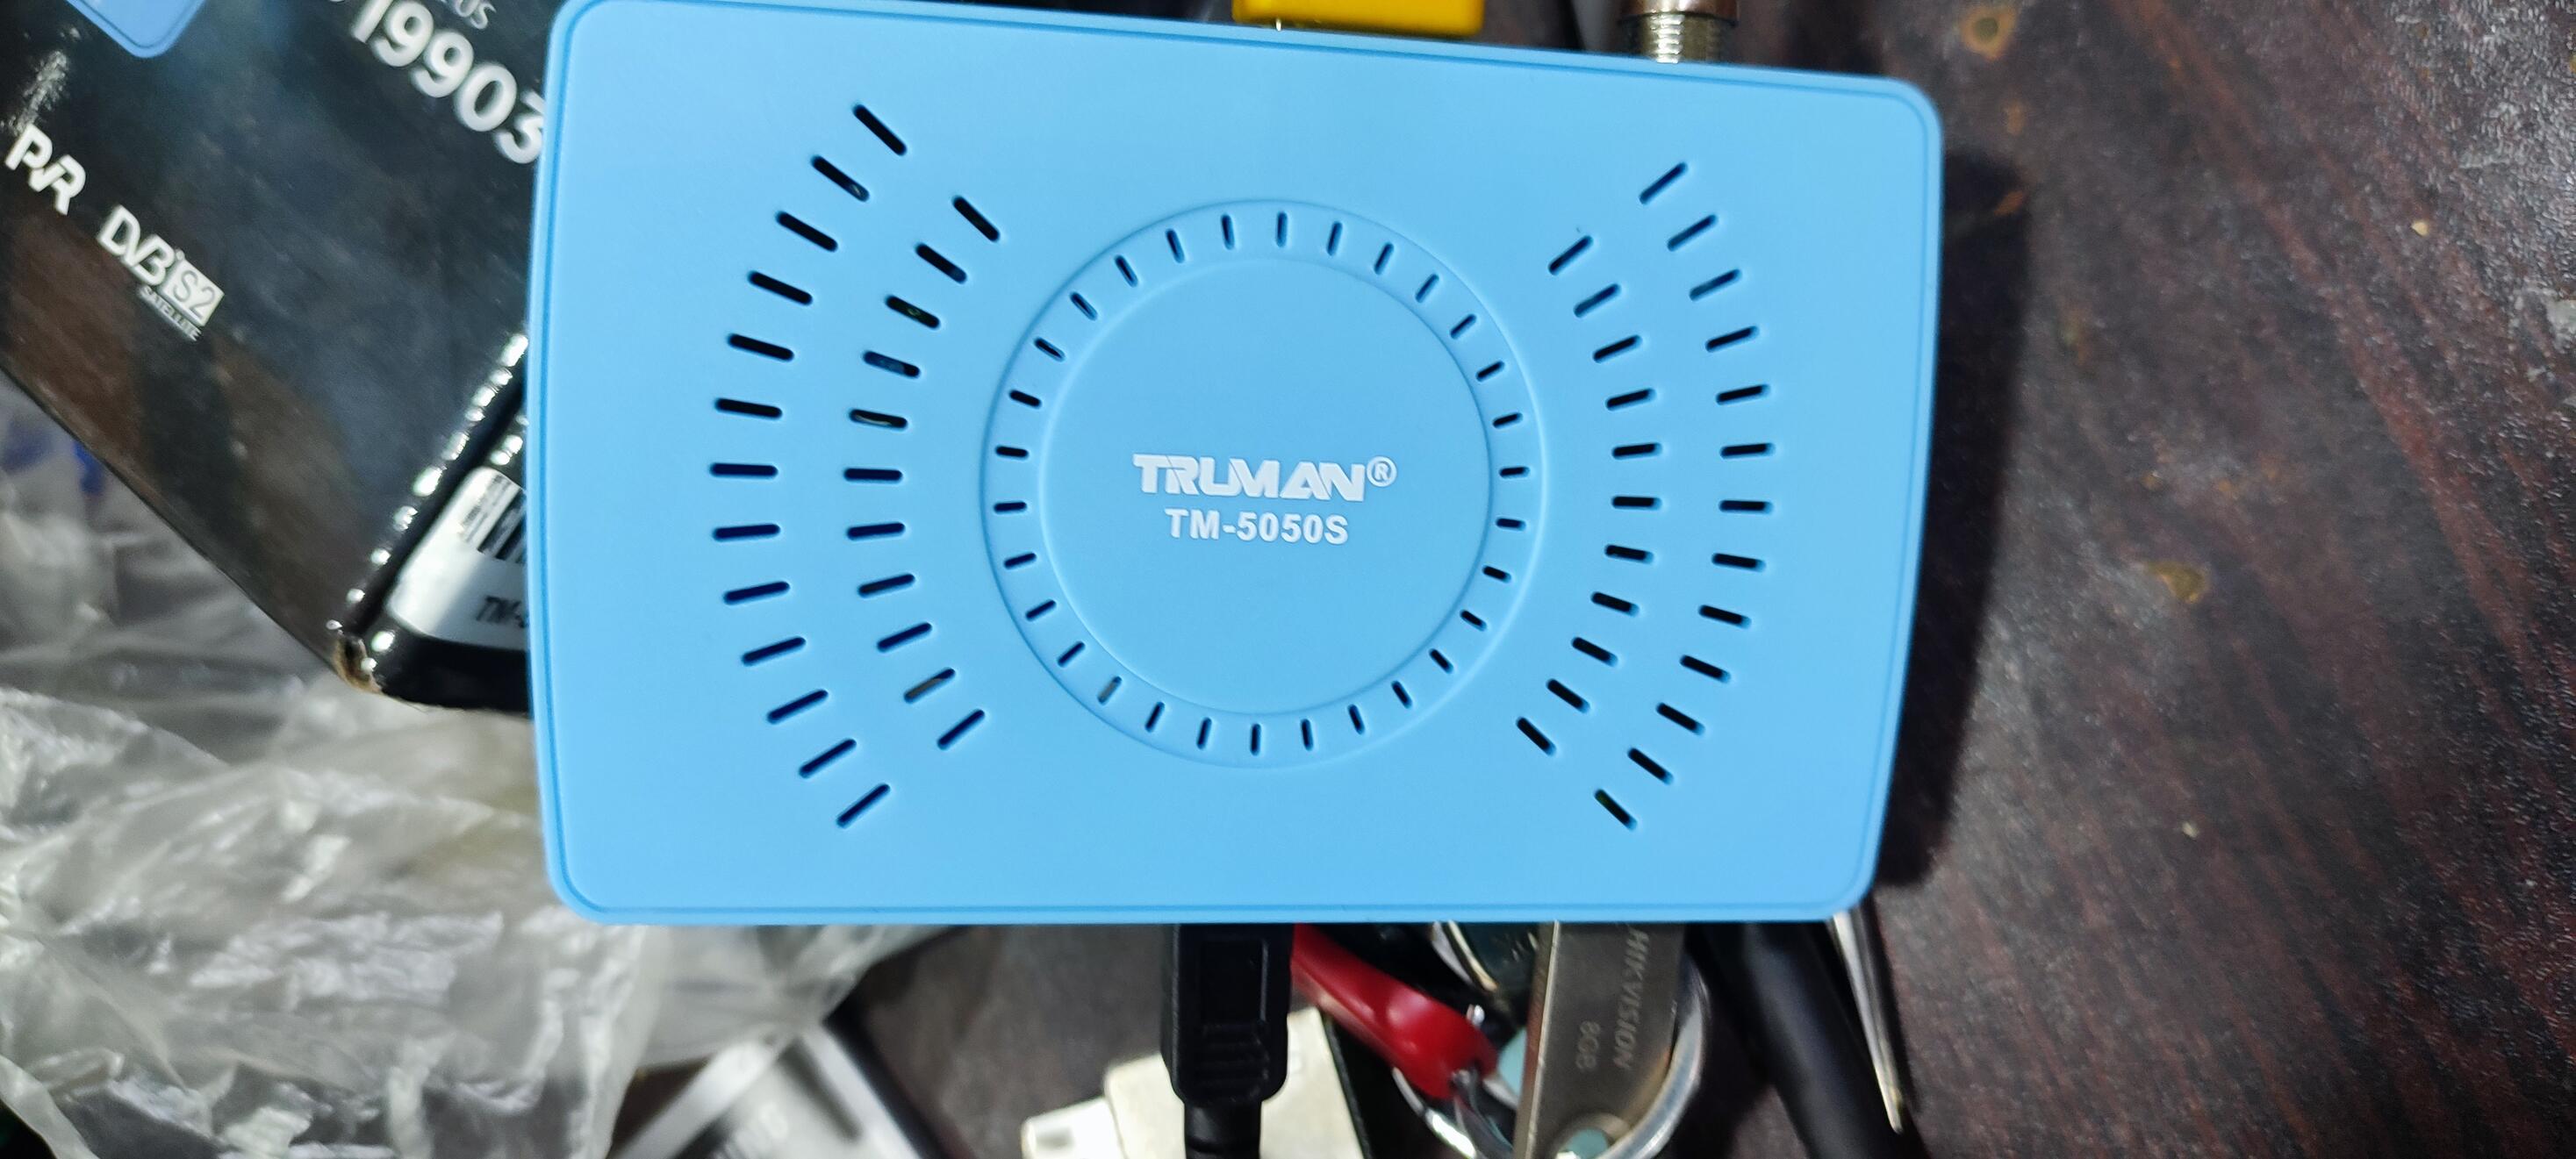 اليكم احدث ملف قنوات عربــي لرسفير TRUMAN TM-5050s معالج GX اللبني للعام الجديد يناير 2023 P_2403nztkx1